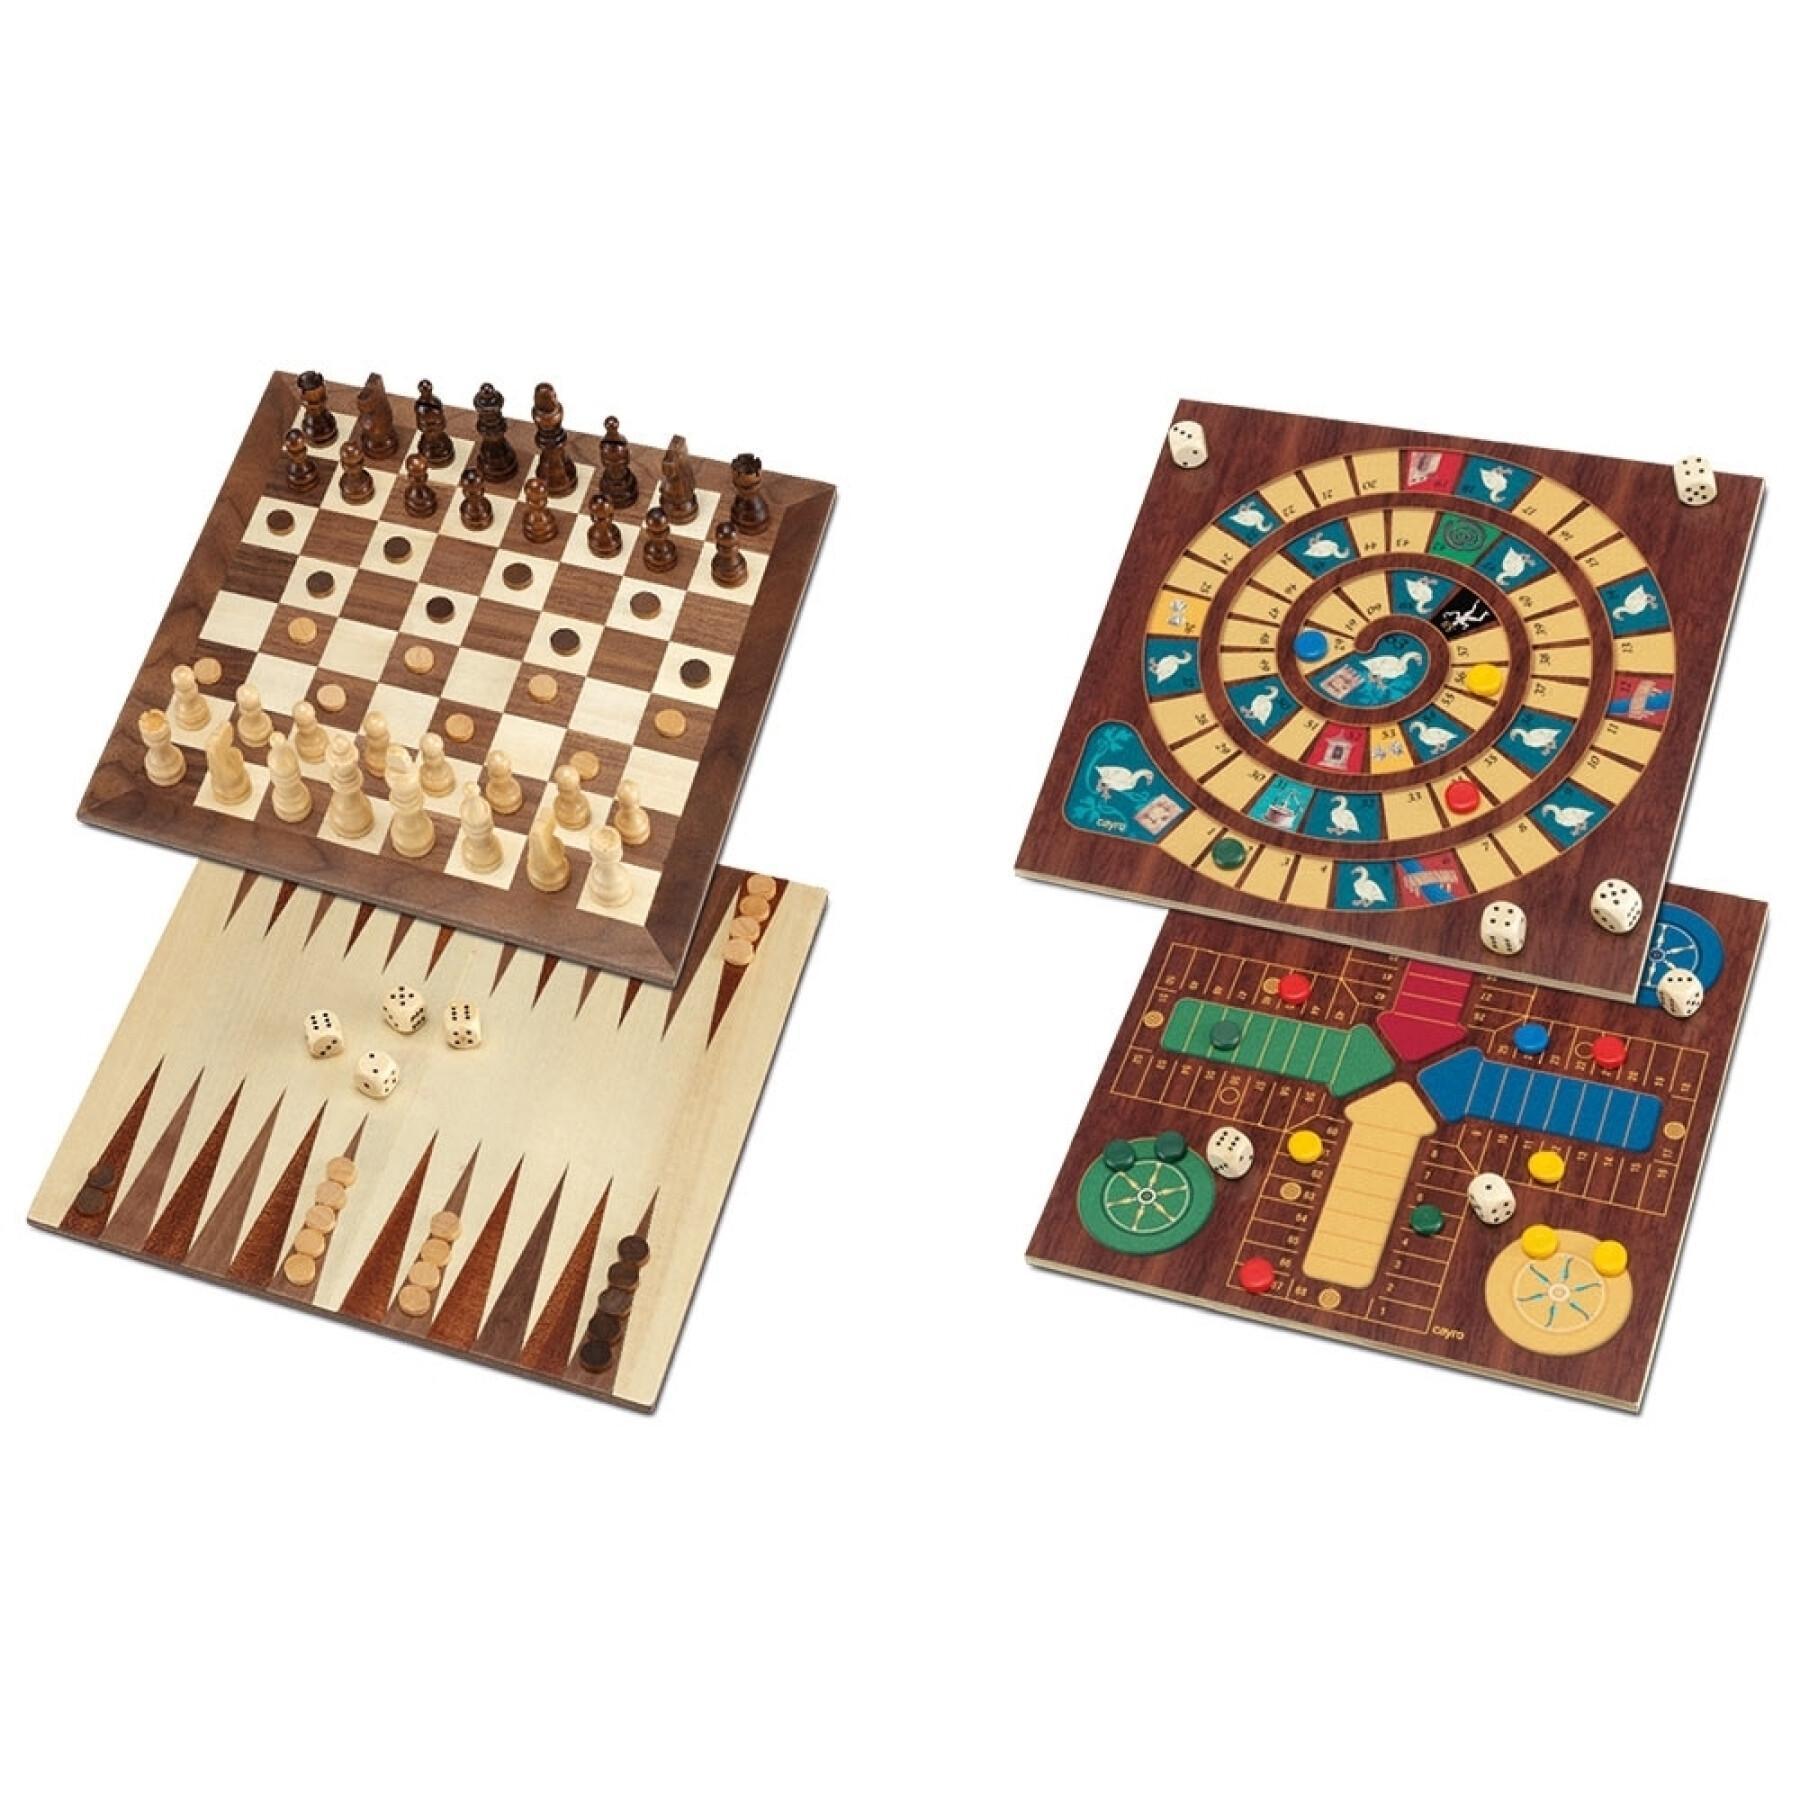 5 giochi da tavolo in 1: oca, parcheesi, scacchi, dama e backgammon Cayro